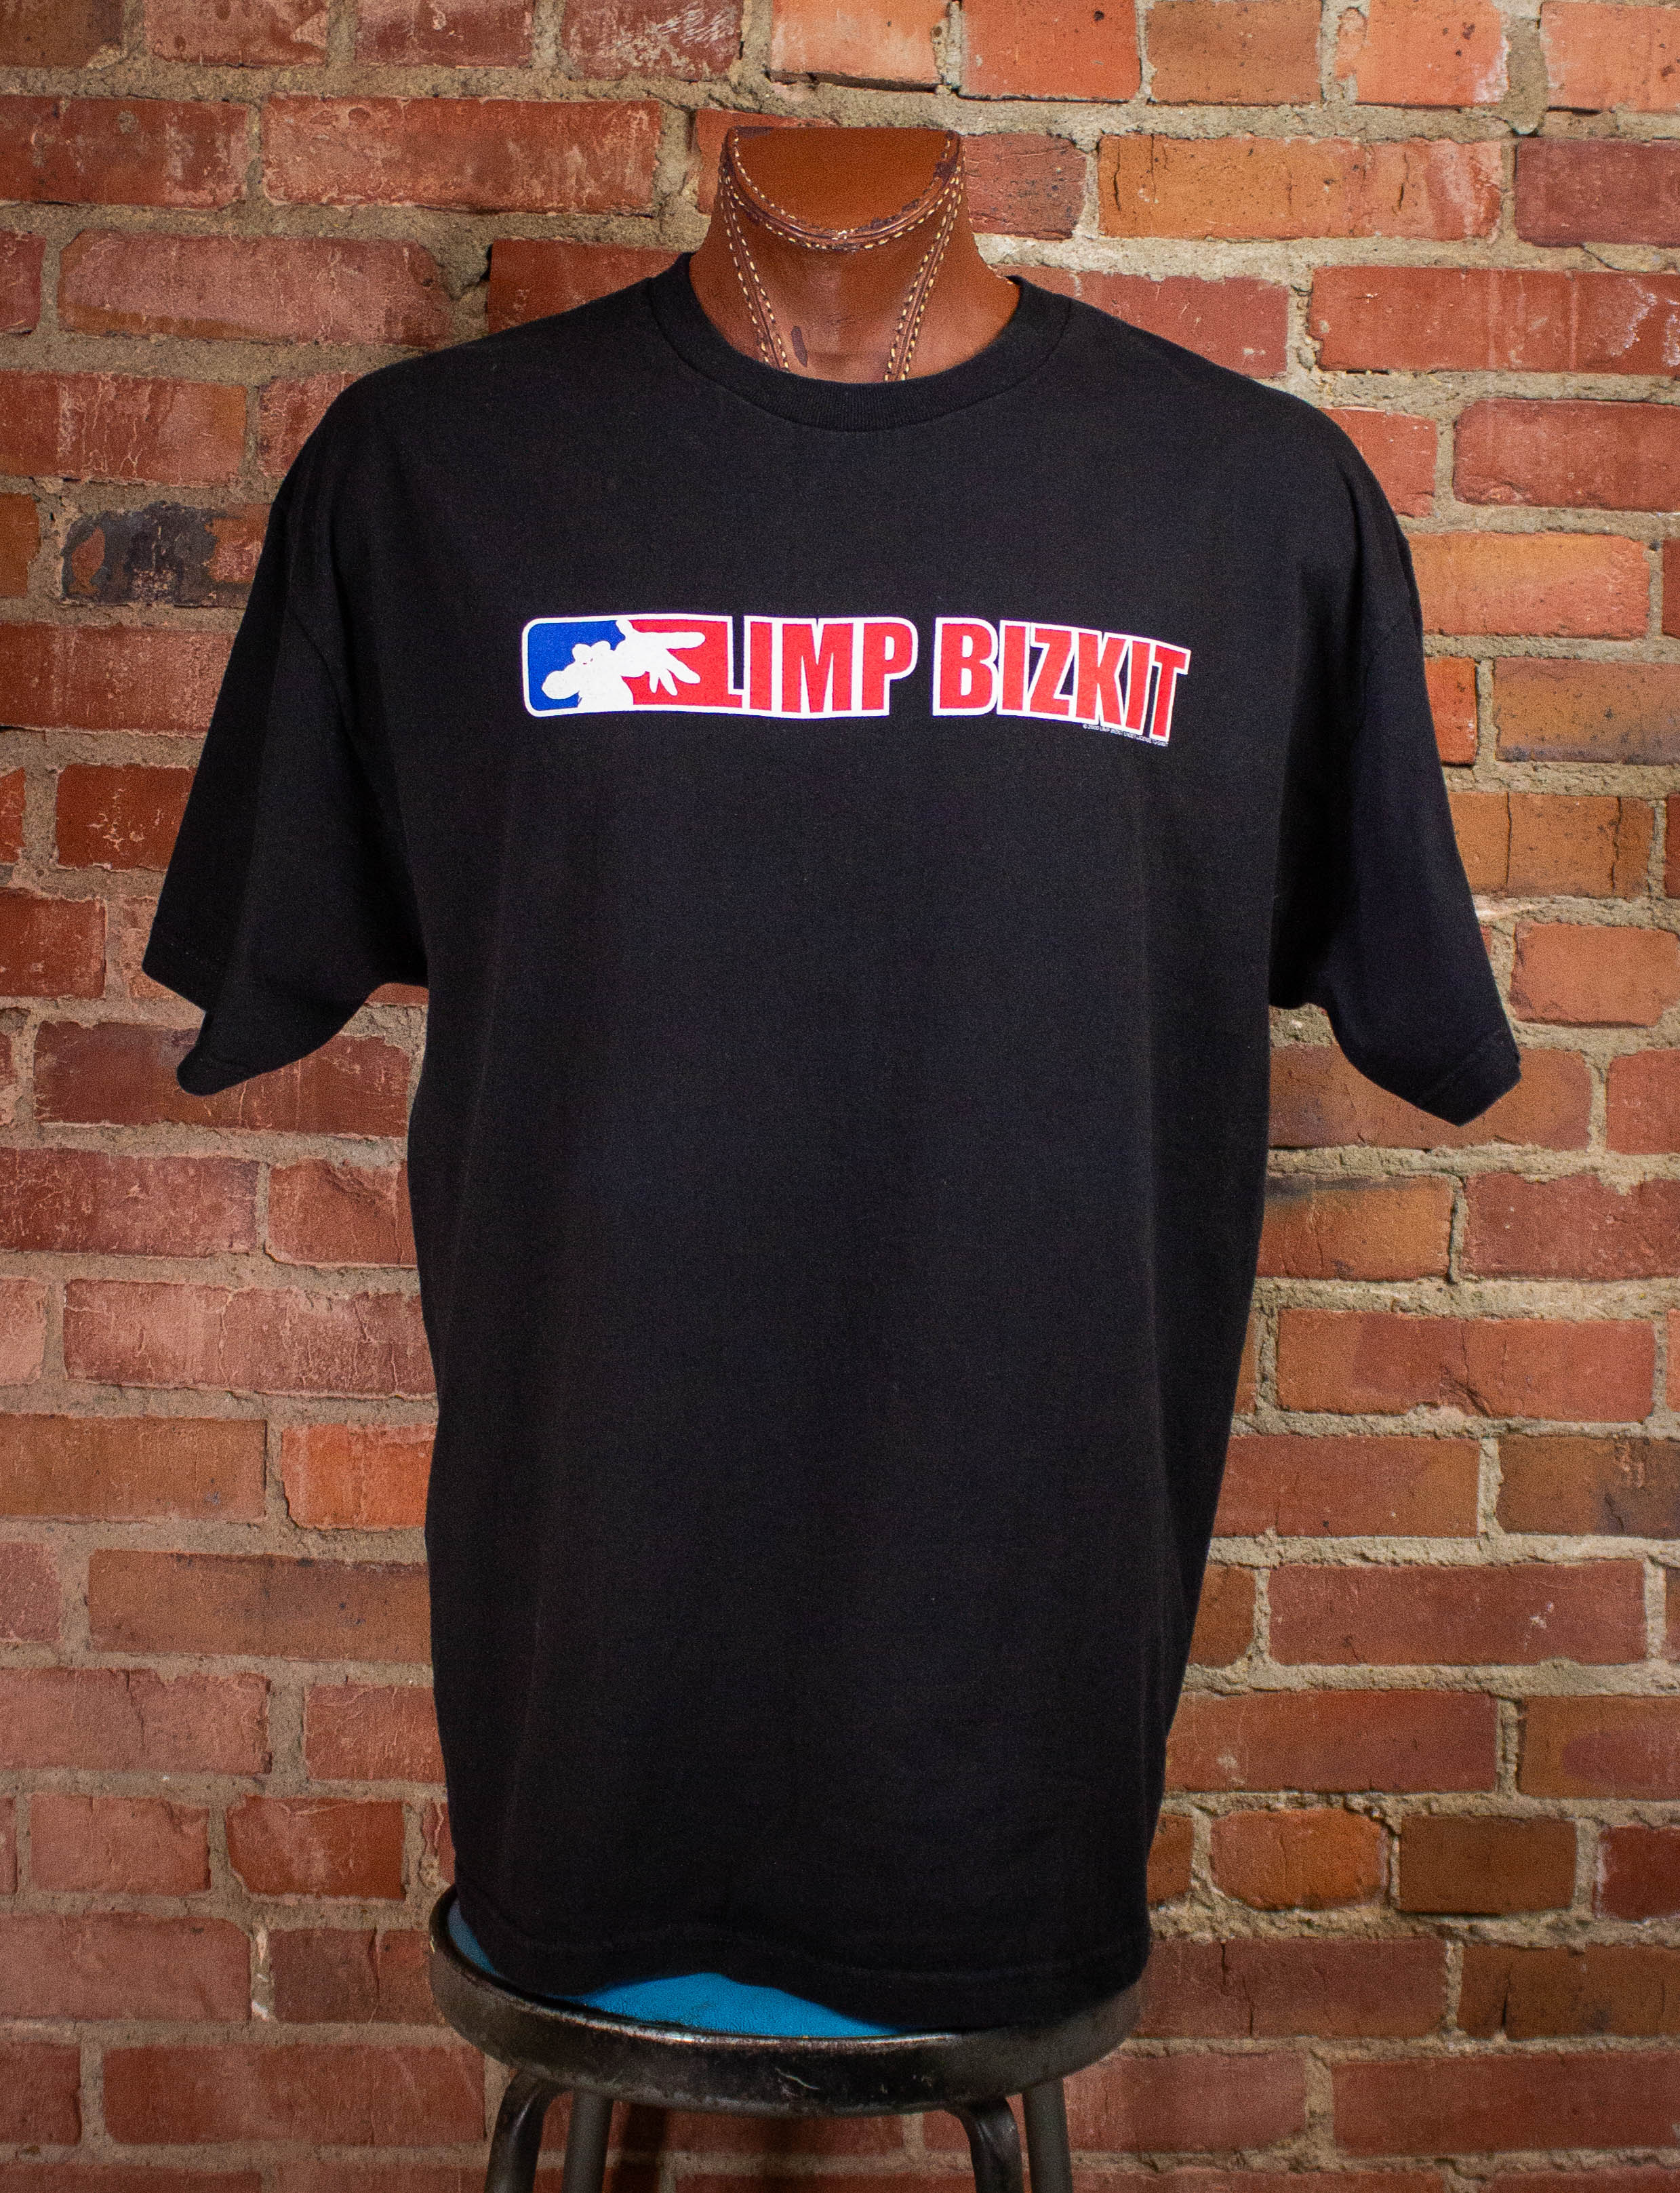 Vintage Limp Bizkit Anger Management Tour Concert T Shirt 2000